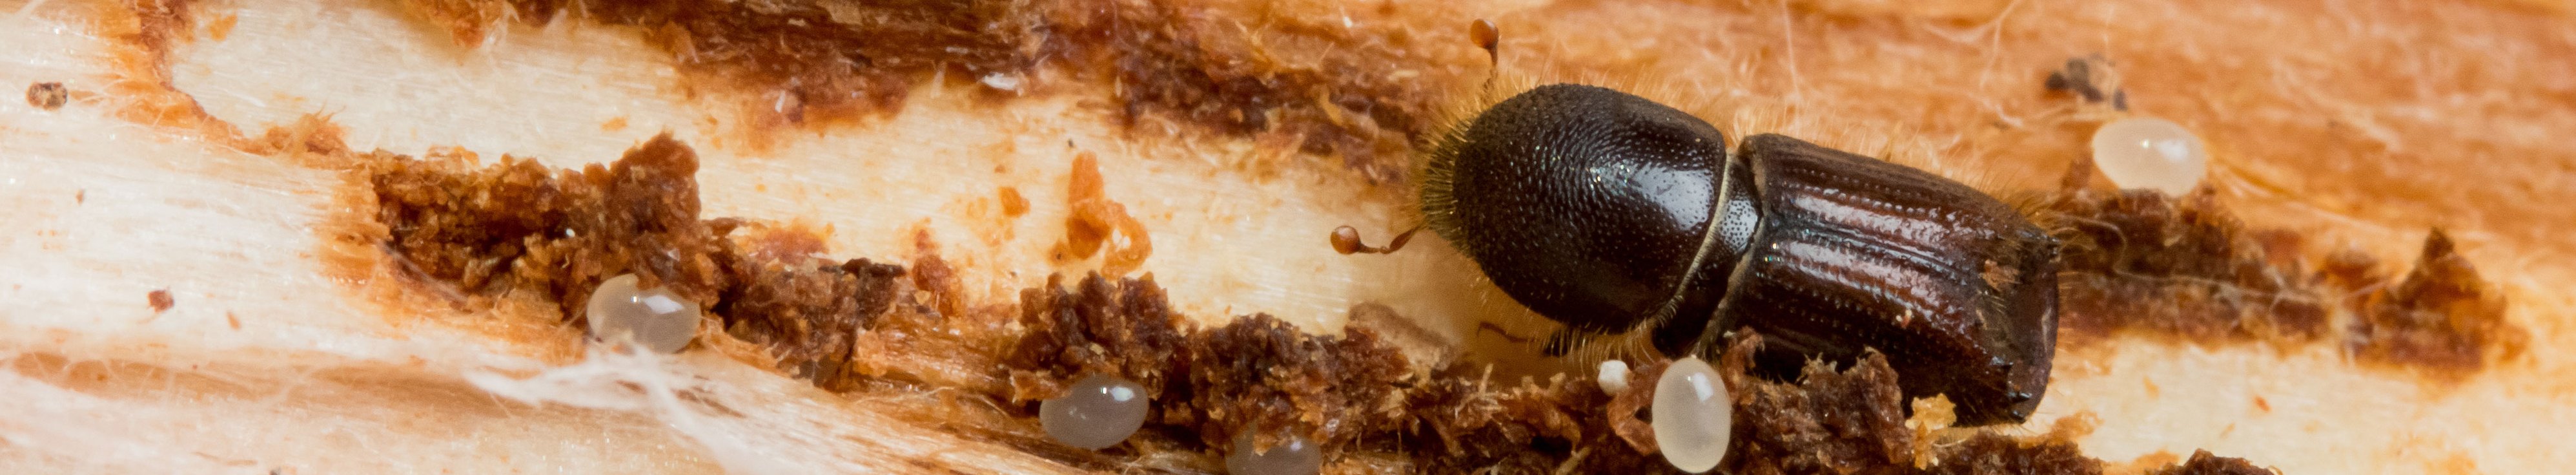 Kleiner brauner Käfer auf hellem Nadelholz.